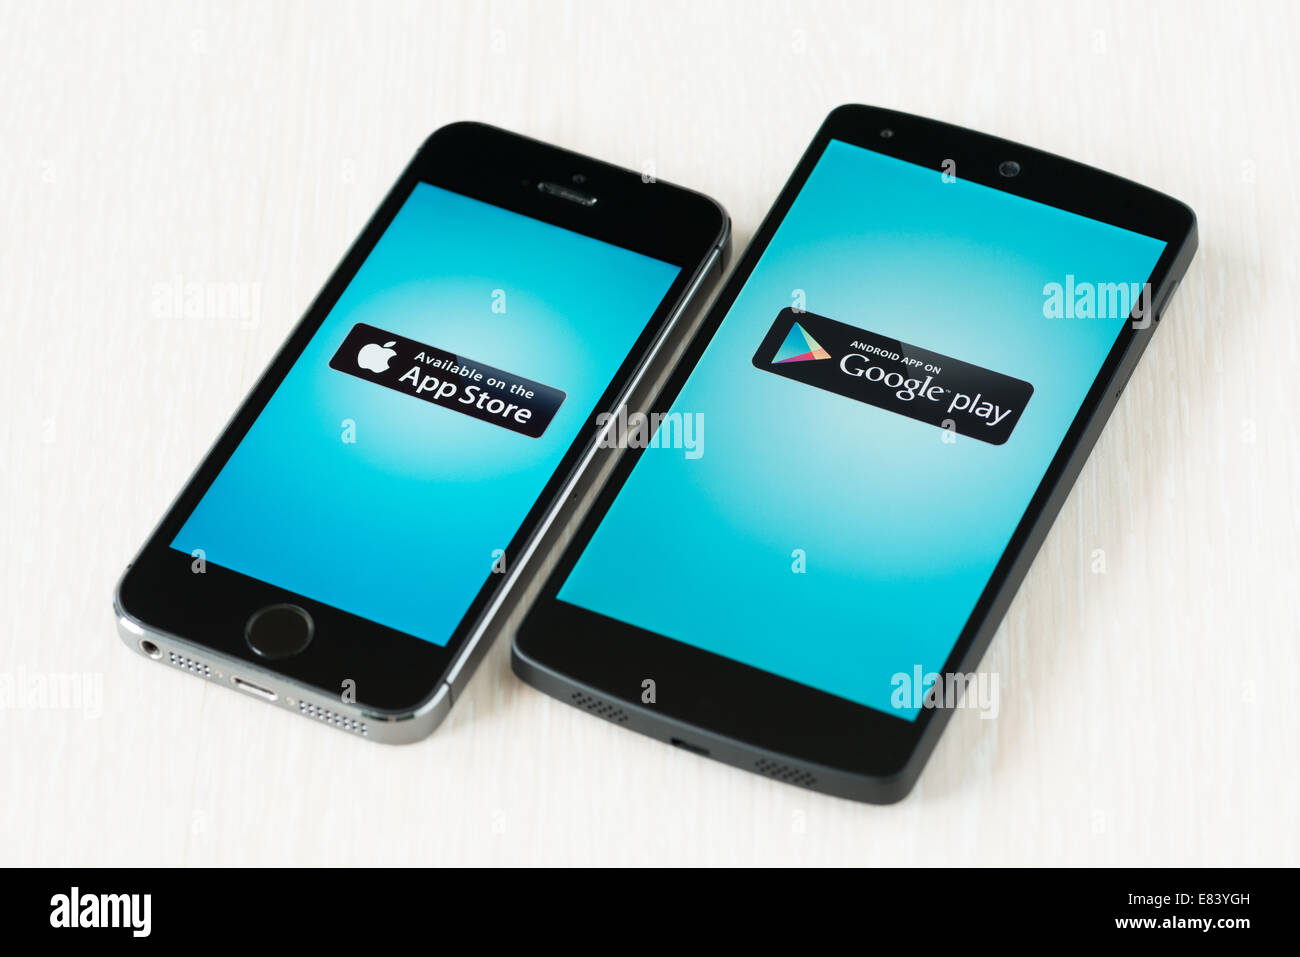 Inquadratura ravvicinata del marchio nuovo Apple iPhone 5S e Google Nexus 5 smartphone con App Store e Google Play logo su una schermata. Foto Stock